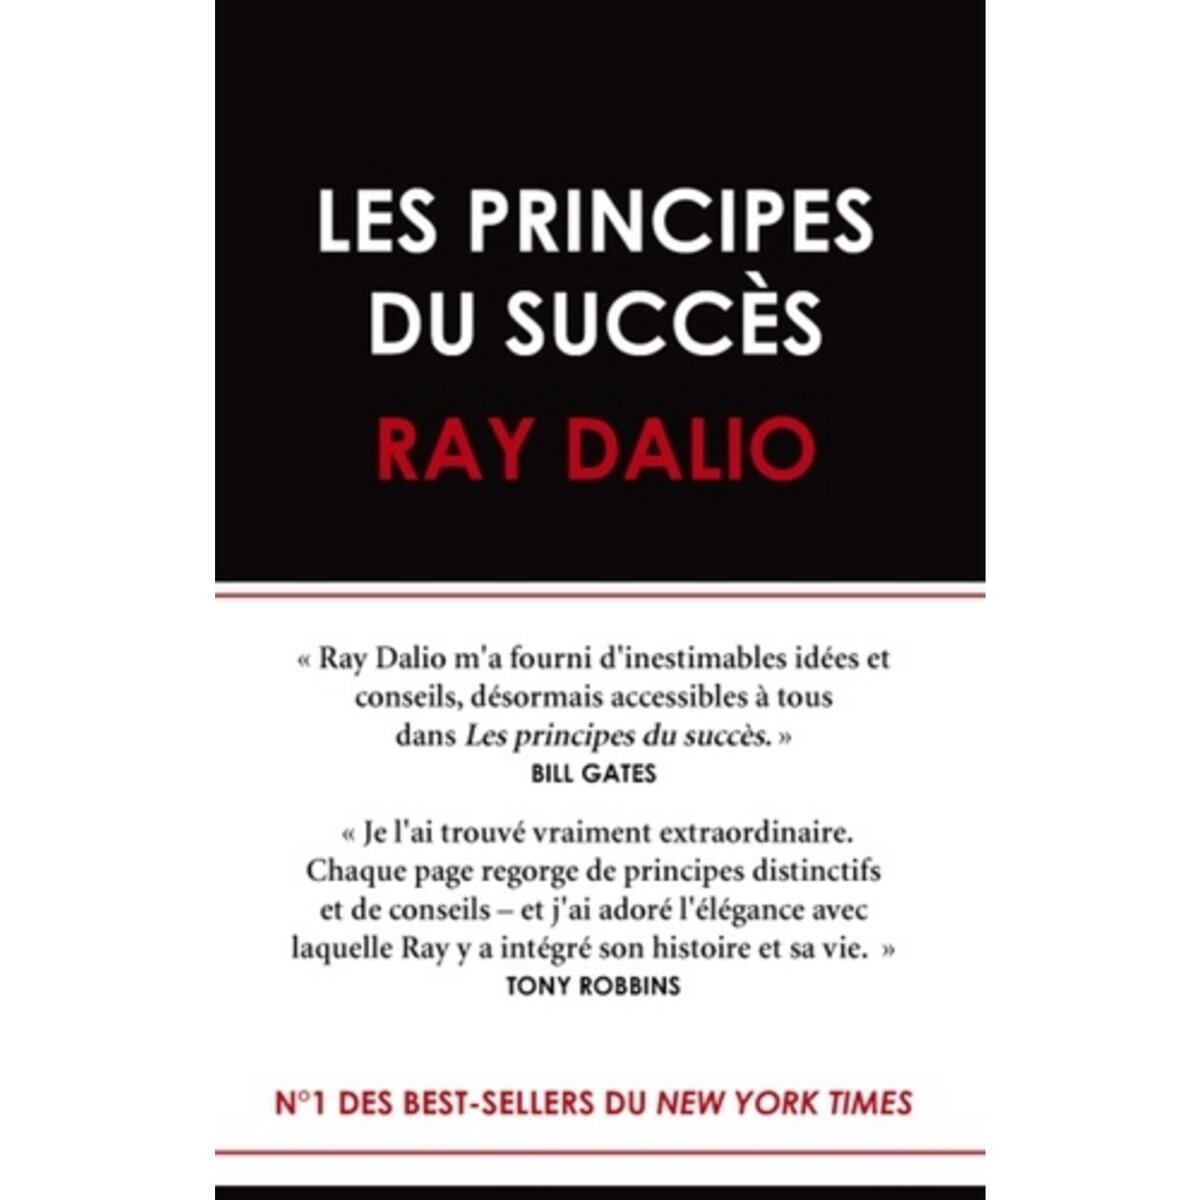  LES PRINCIPES DU SUCCES, Dalio Ray